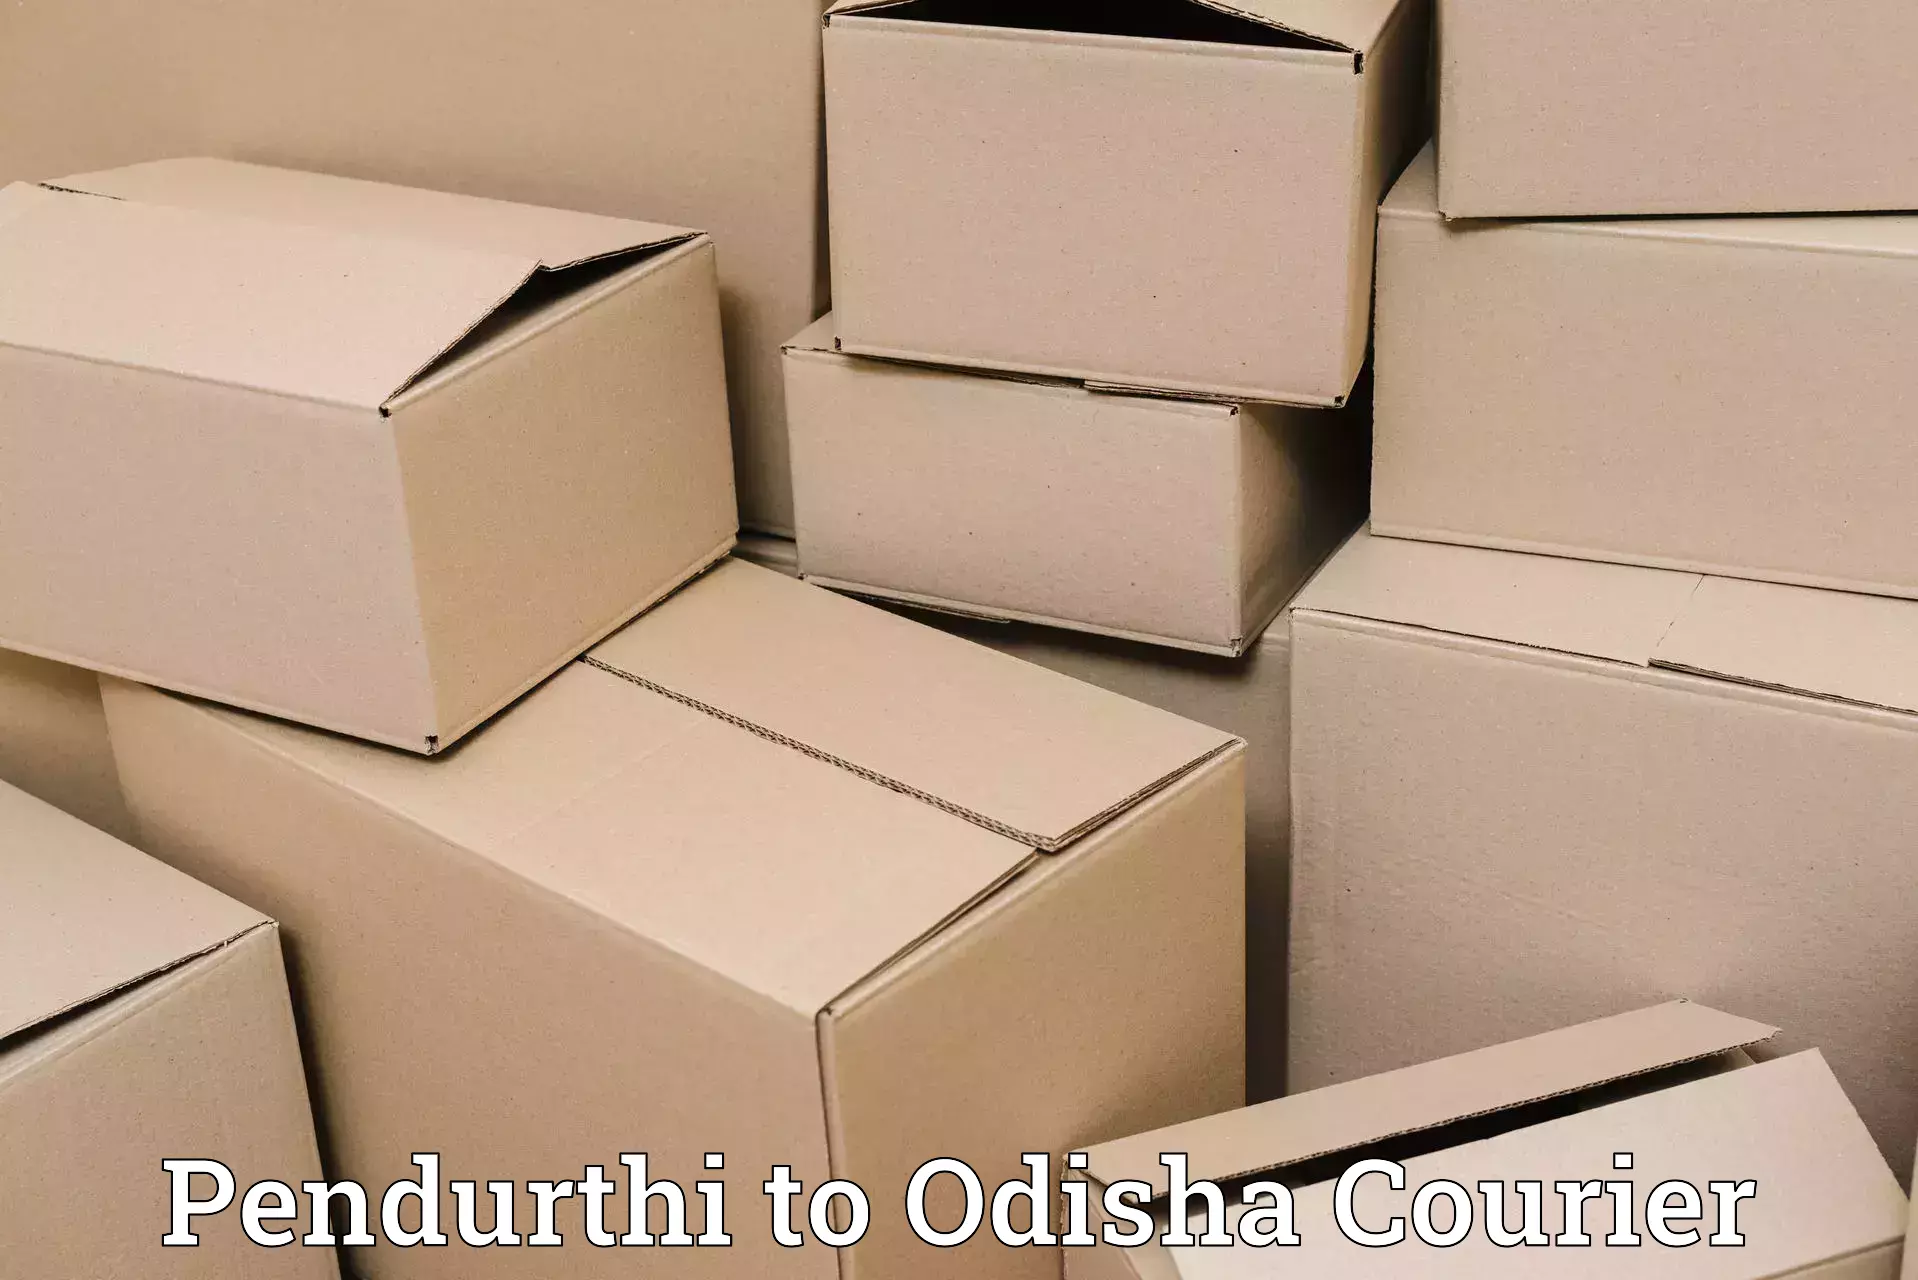 Efficient logistics management Pendurthi to Ghuntagadia